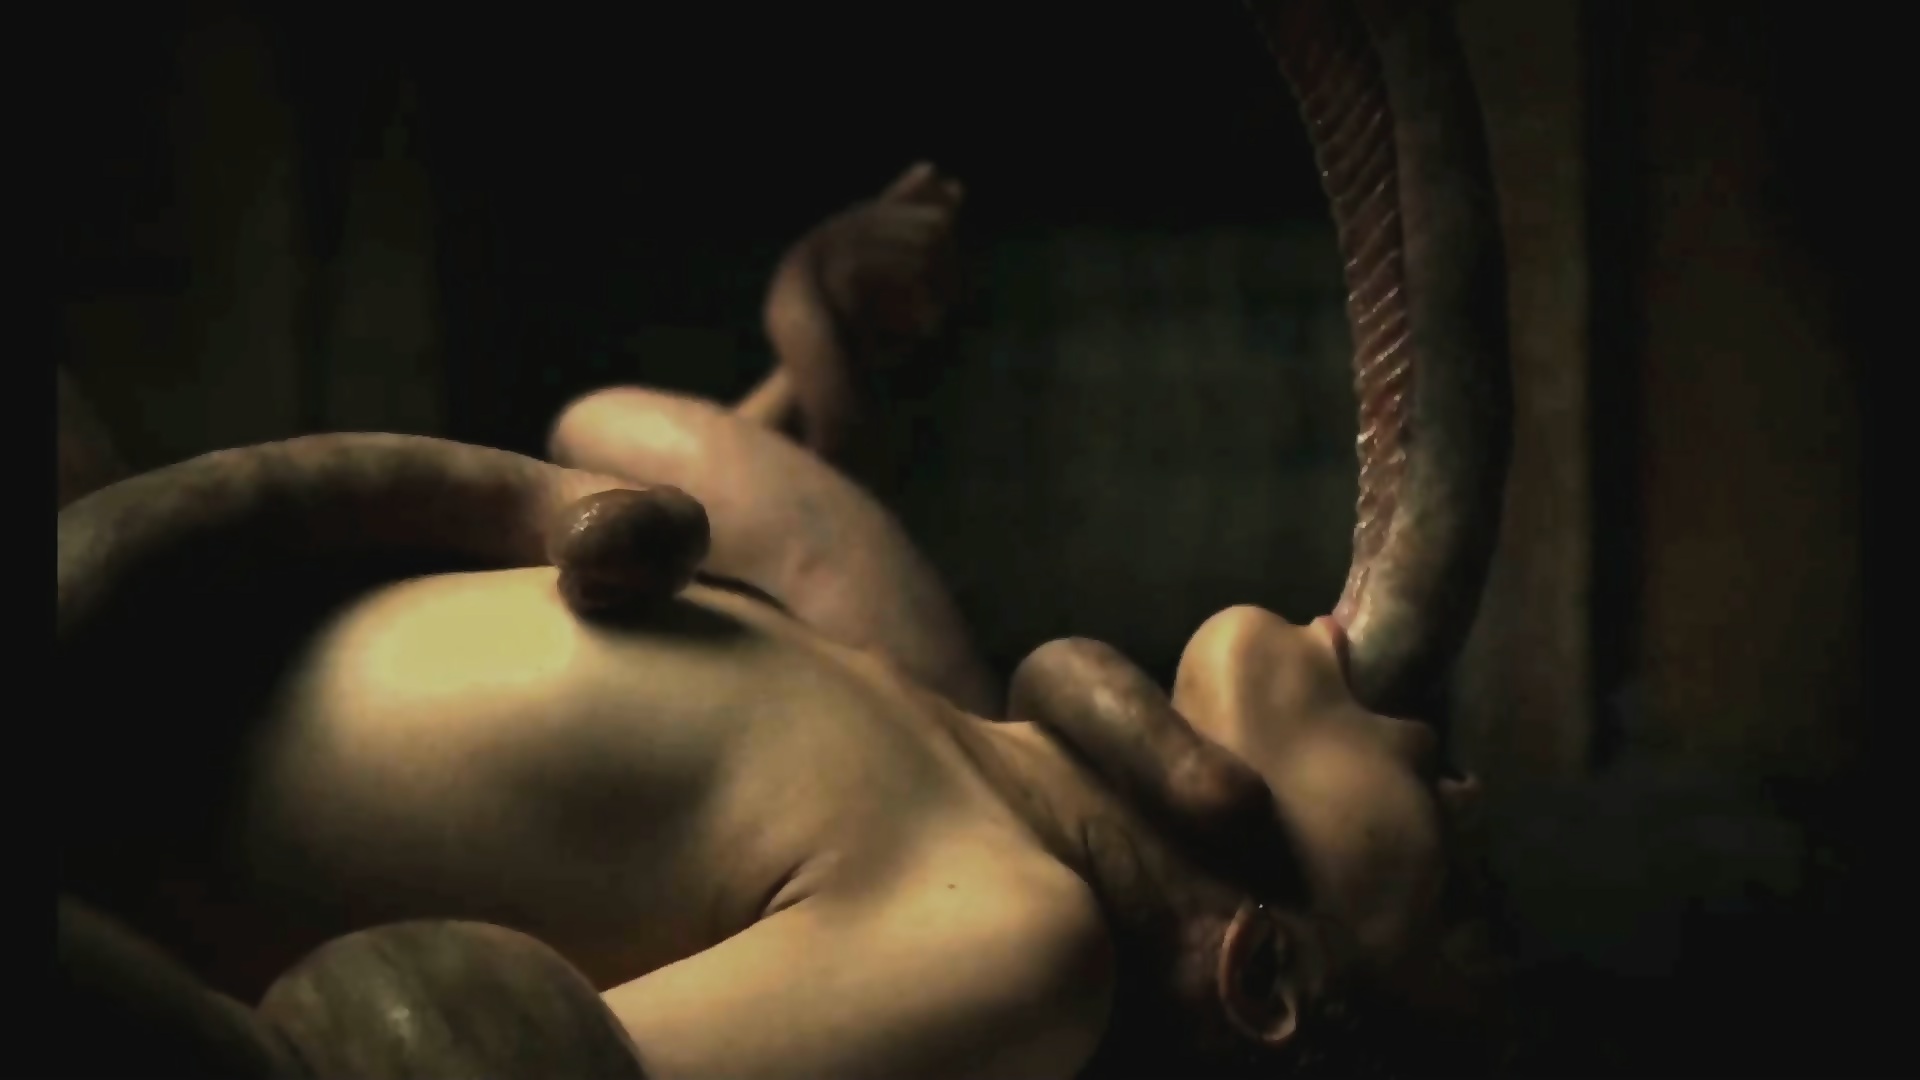 Alien Porn Scenes - The Untamed Alien - Tentacle Deepthroat 1080p (long Version) - EPORNER